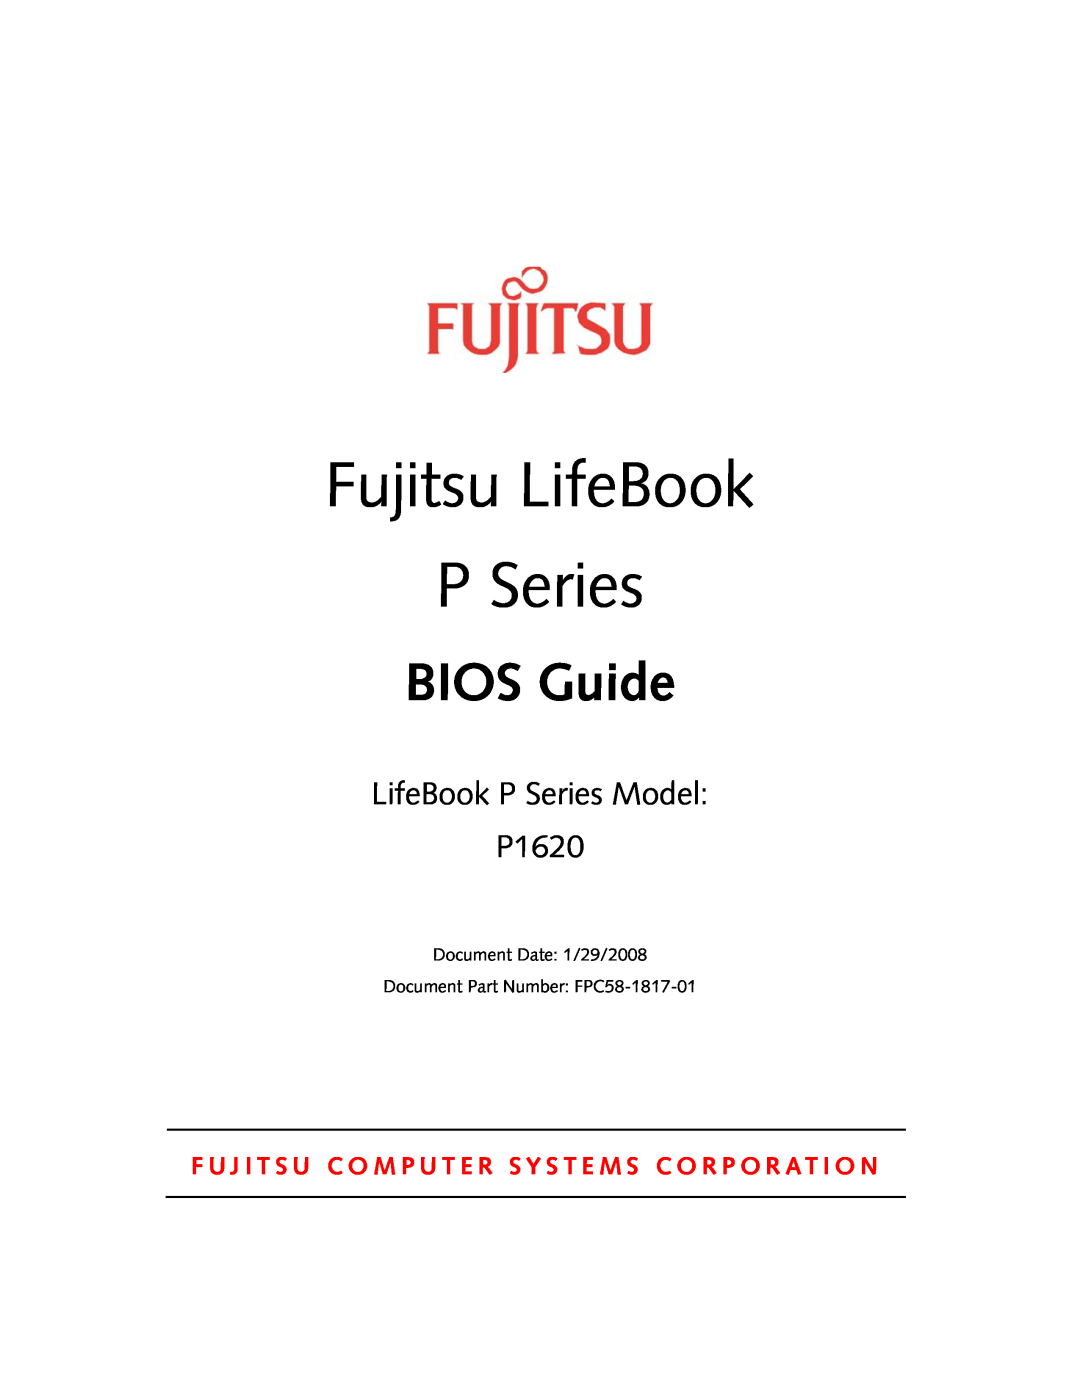 Fujitsu manual Fujitsu LifeBook, BIOS Guide, LifeBook P Series Model P1620 